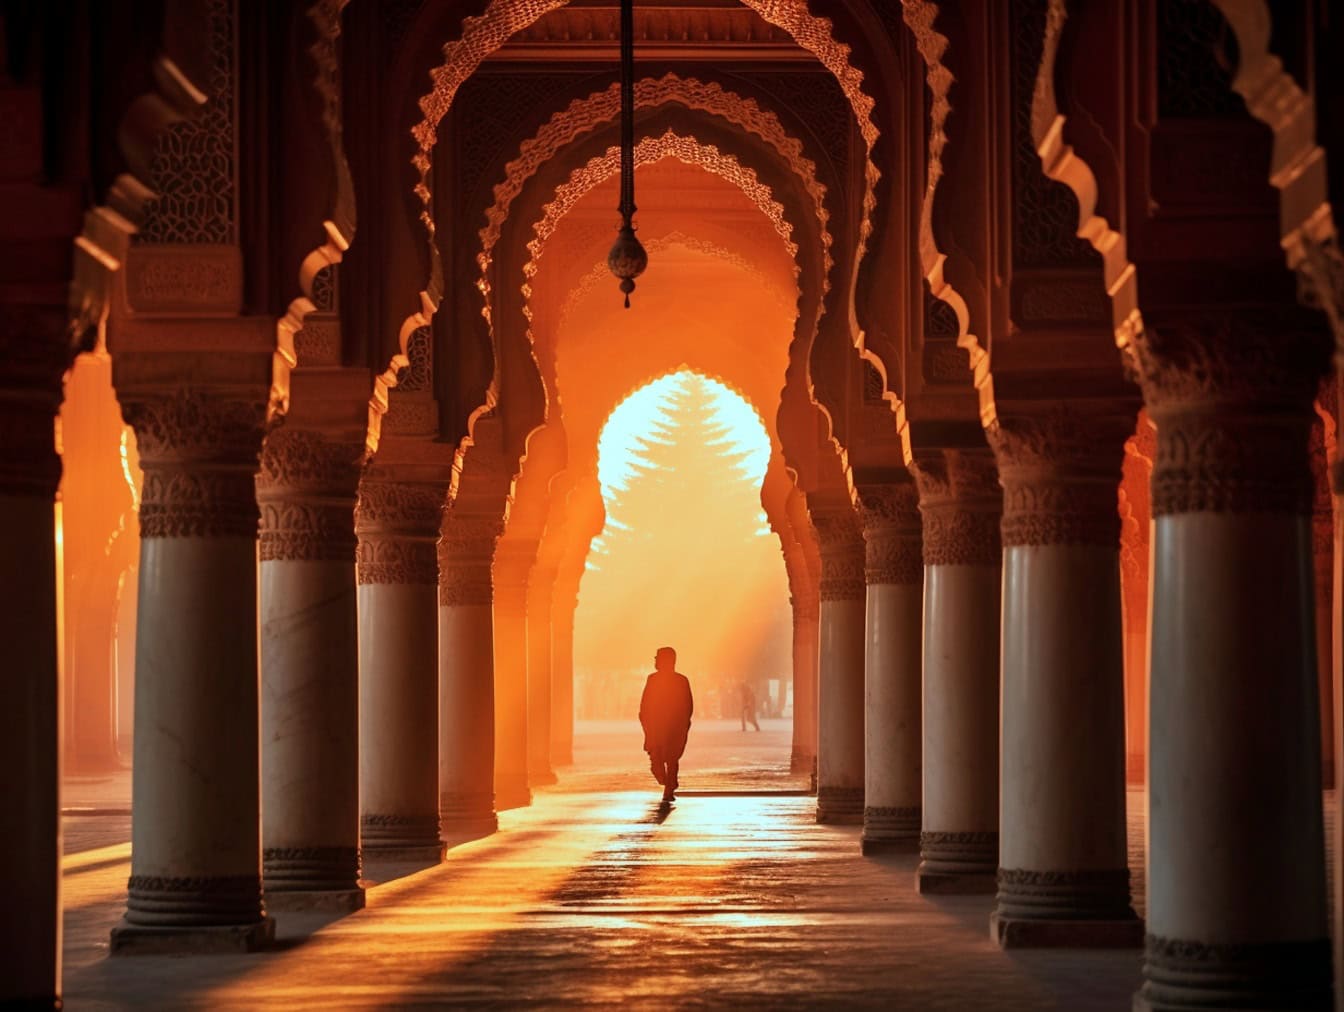 Apus de soare cu silueta unui bărbat care se plimbă prin arcul ornamentat al unei frumoase moschei islamice cu arhitectură tradițională arabă